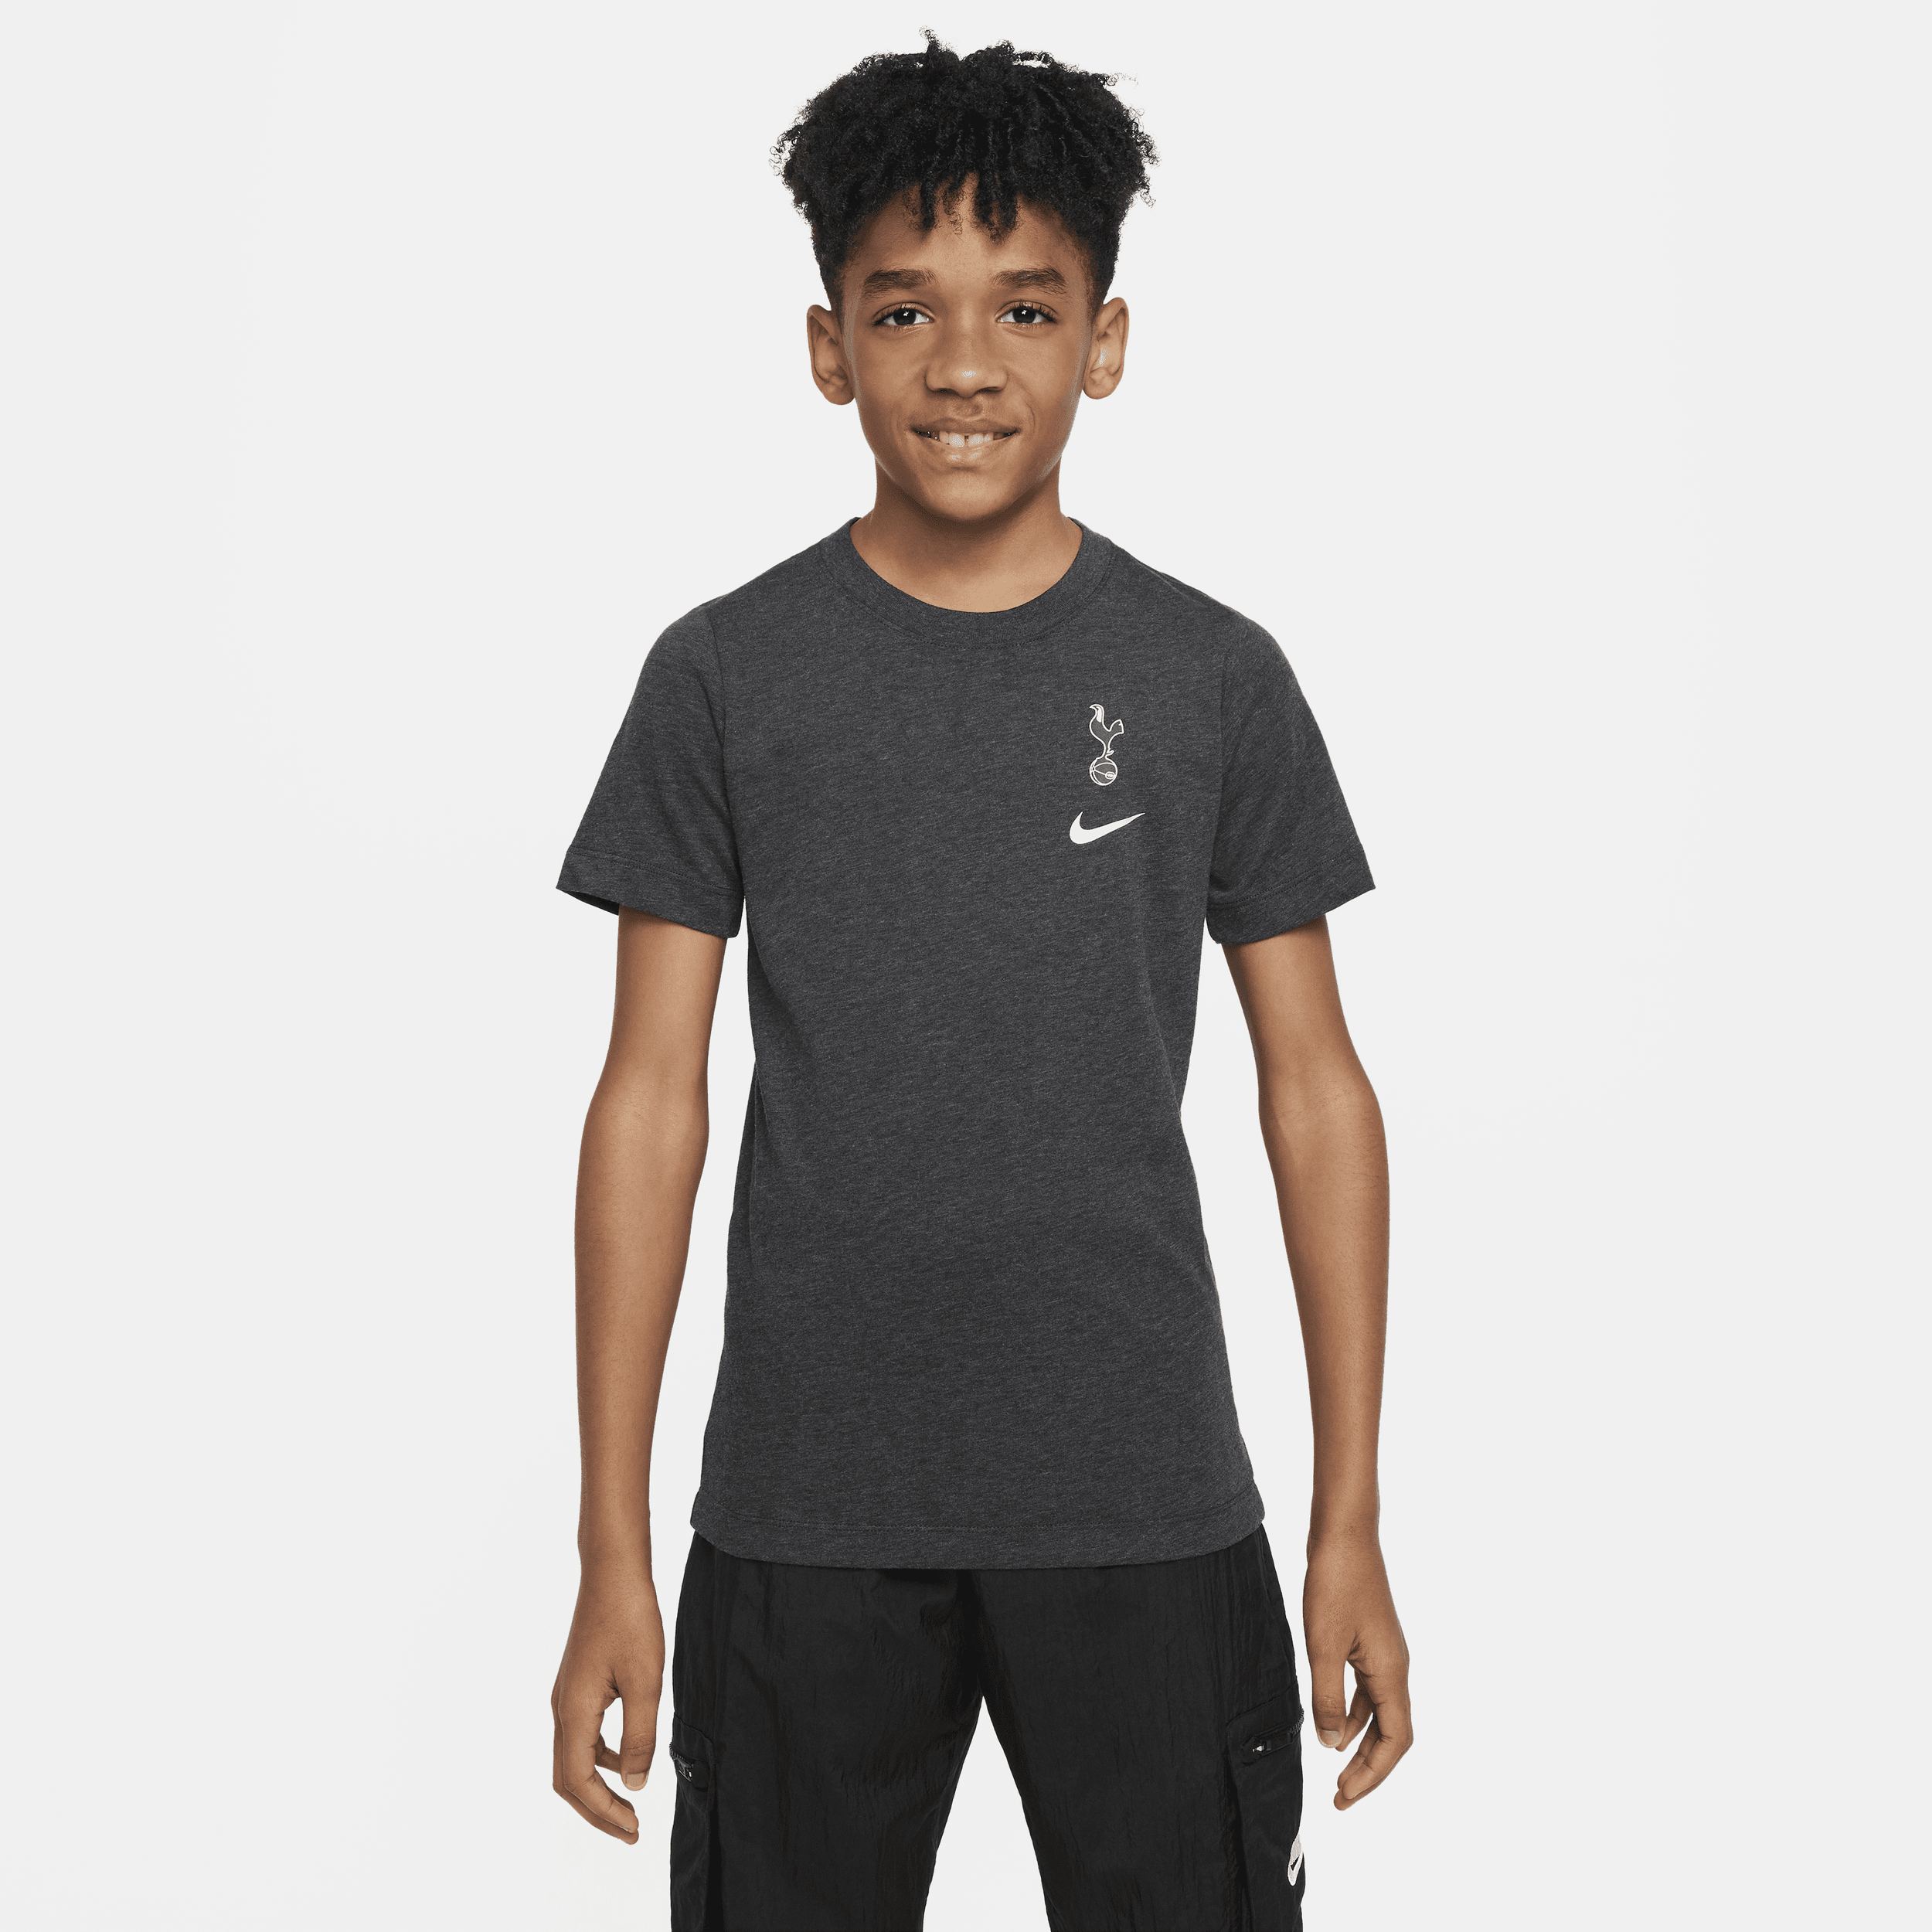 Tottenham Hotspur Nike voetbalshirt voor kids - Zwart